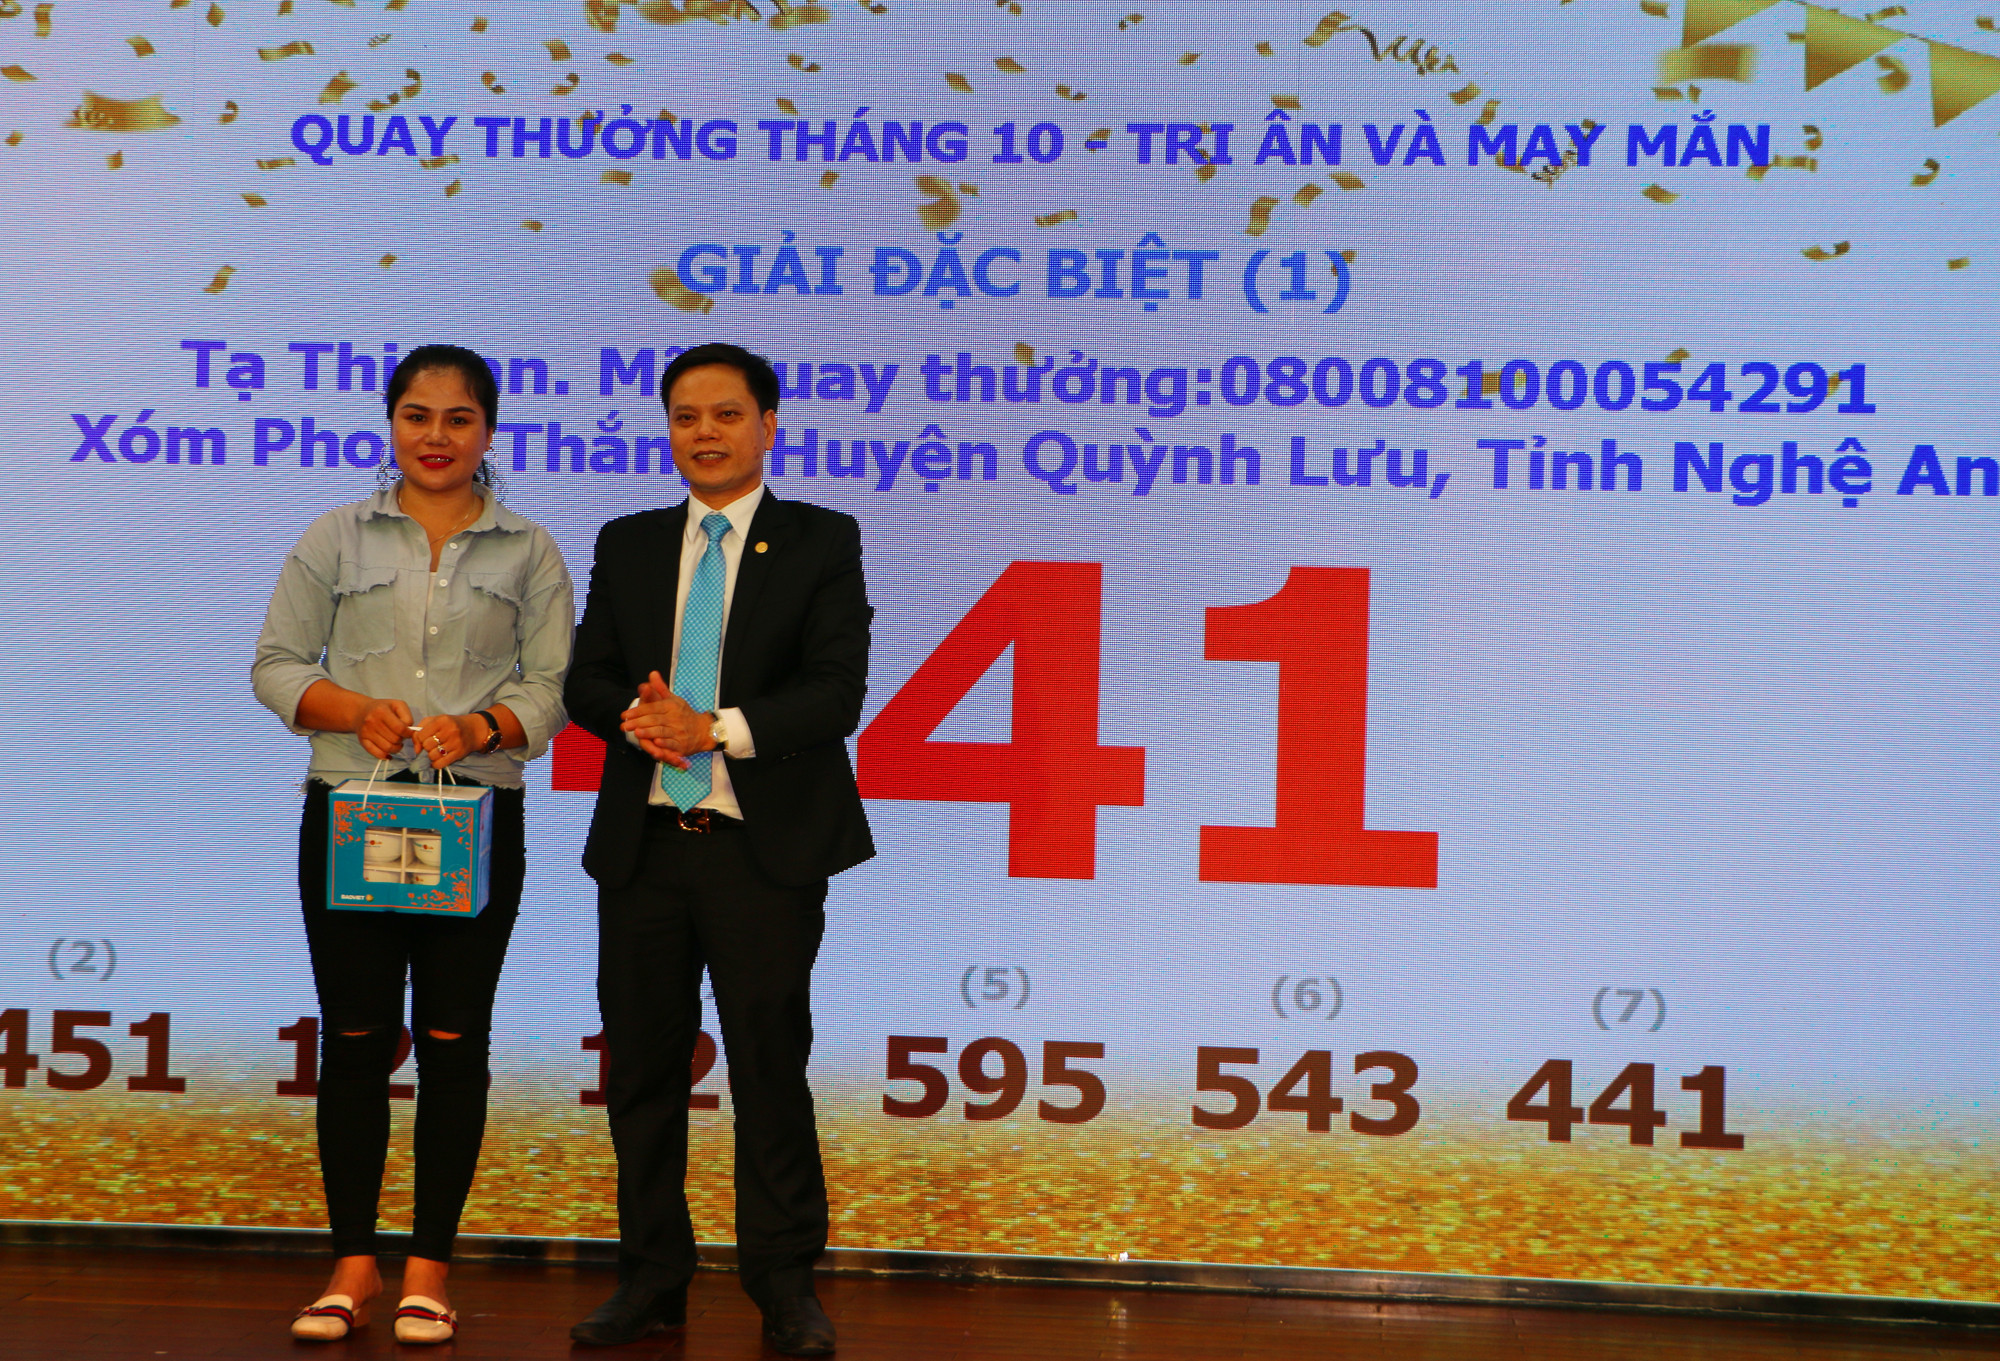 Đại diện Bảo Việt Nhân thọ Bắc Nghệ An trao quà lưu niệm cám ơn đại diện khách hàng chứng kiến lễ quay thưởng. Ảnh: Nguyễn Hải